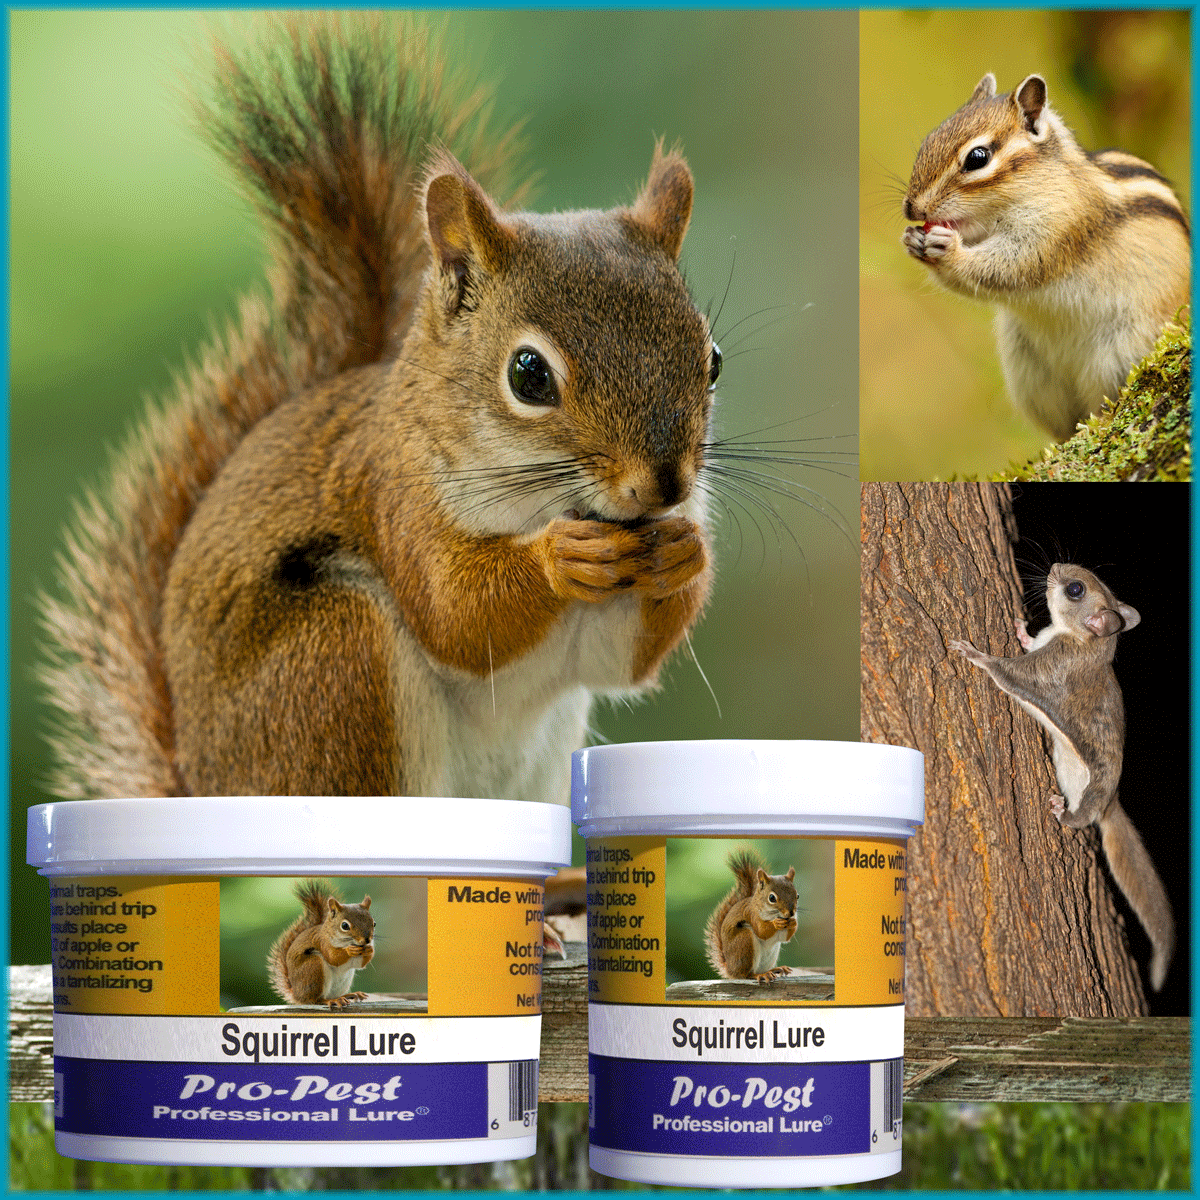 Pro-Pest Squirrel Lure – Prof 8 oz Jars -8ct